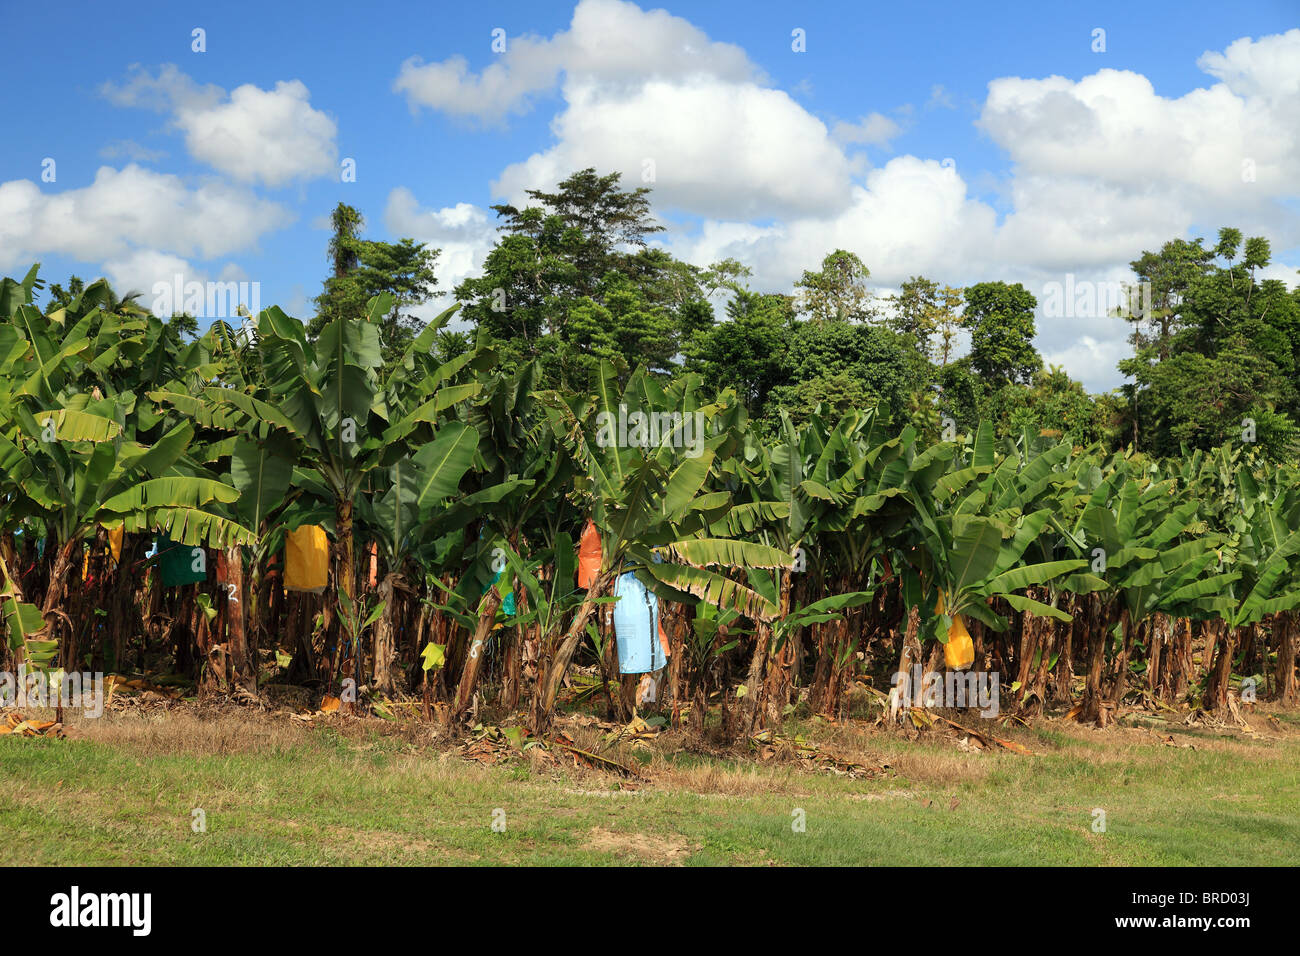 Bananenplantage in Ost-Australien (Queensland). Die farbigen Taschen werden verwendet, um die Früchte zu schützen. Stockfoto